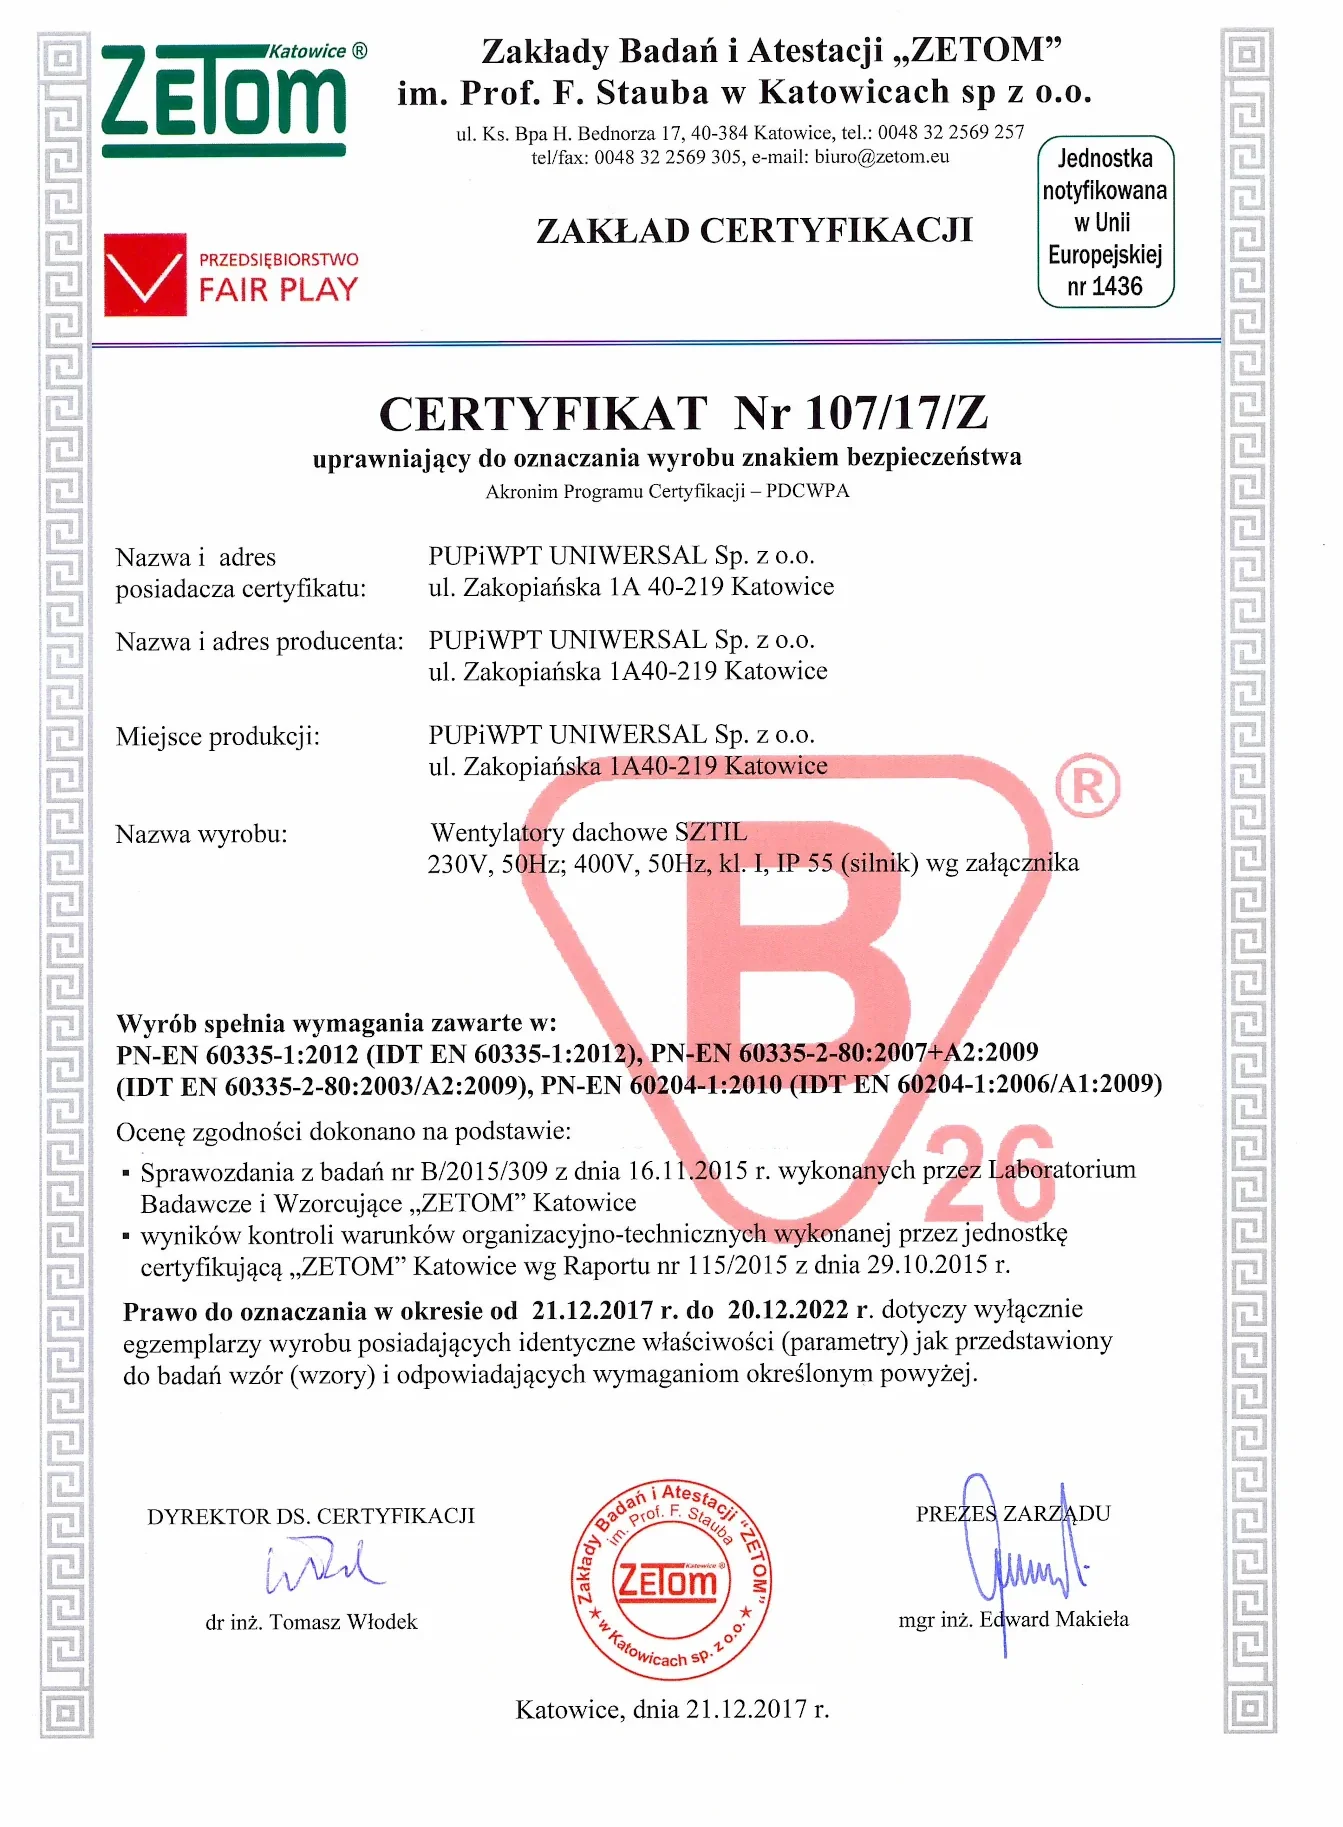 Certyfikat uprawniający do oznaczenia wyrobu znakiem bezpieczeństwa (2017)